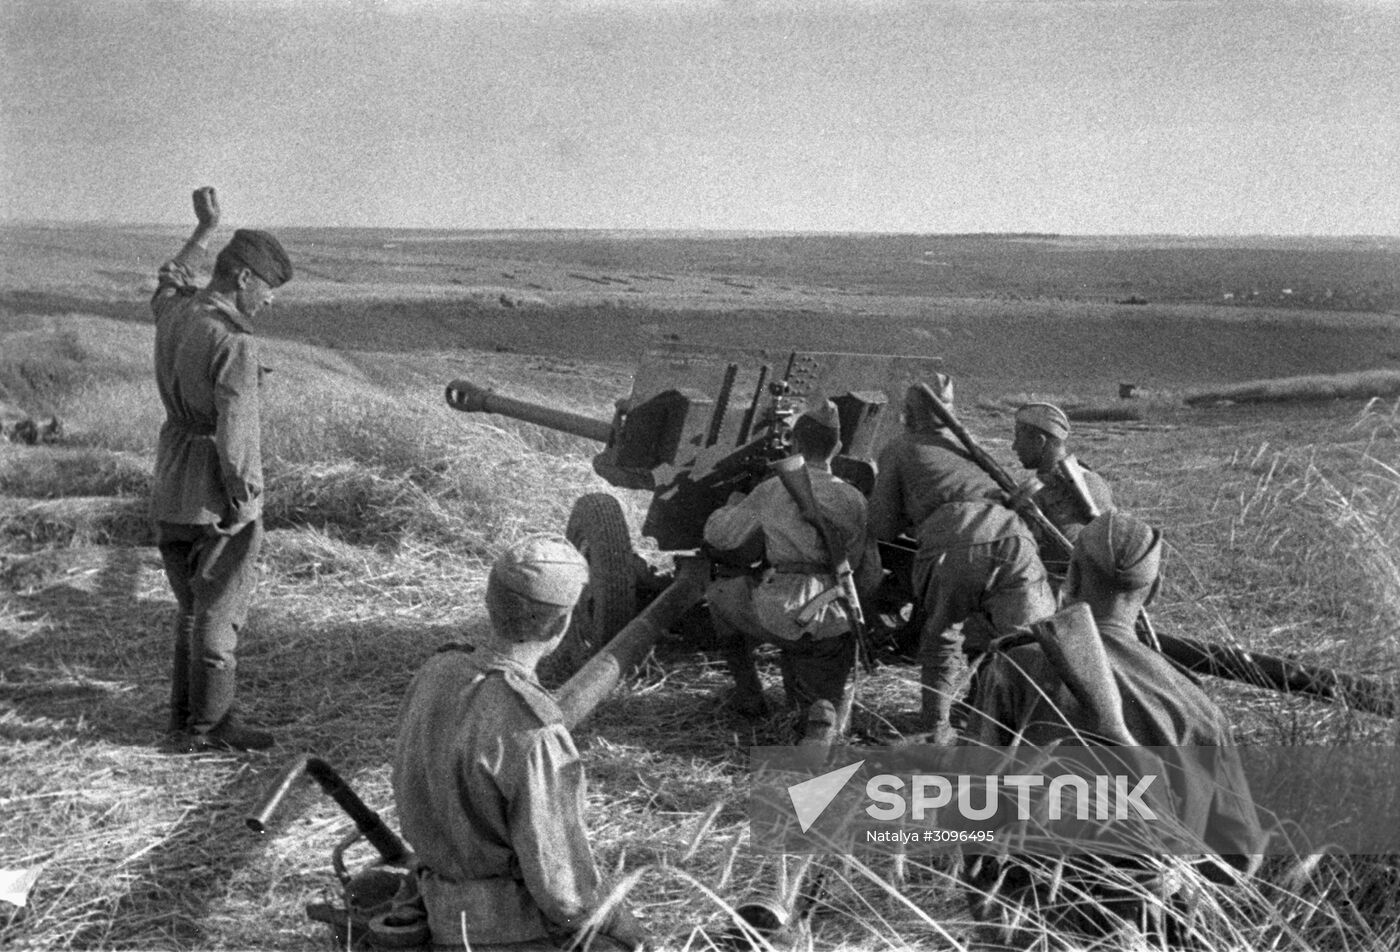 Battle of Kursk